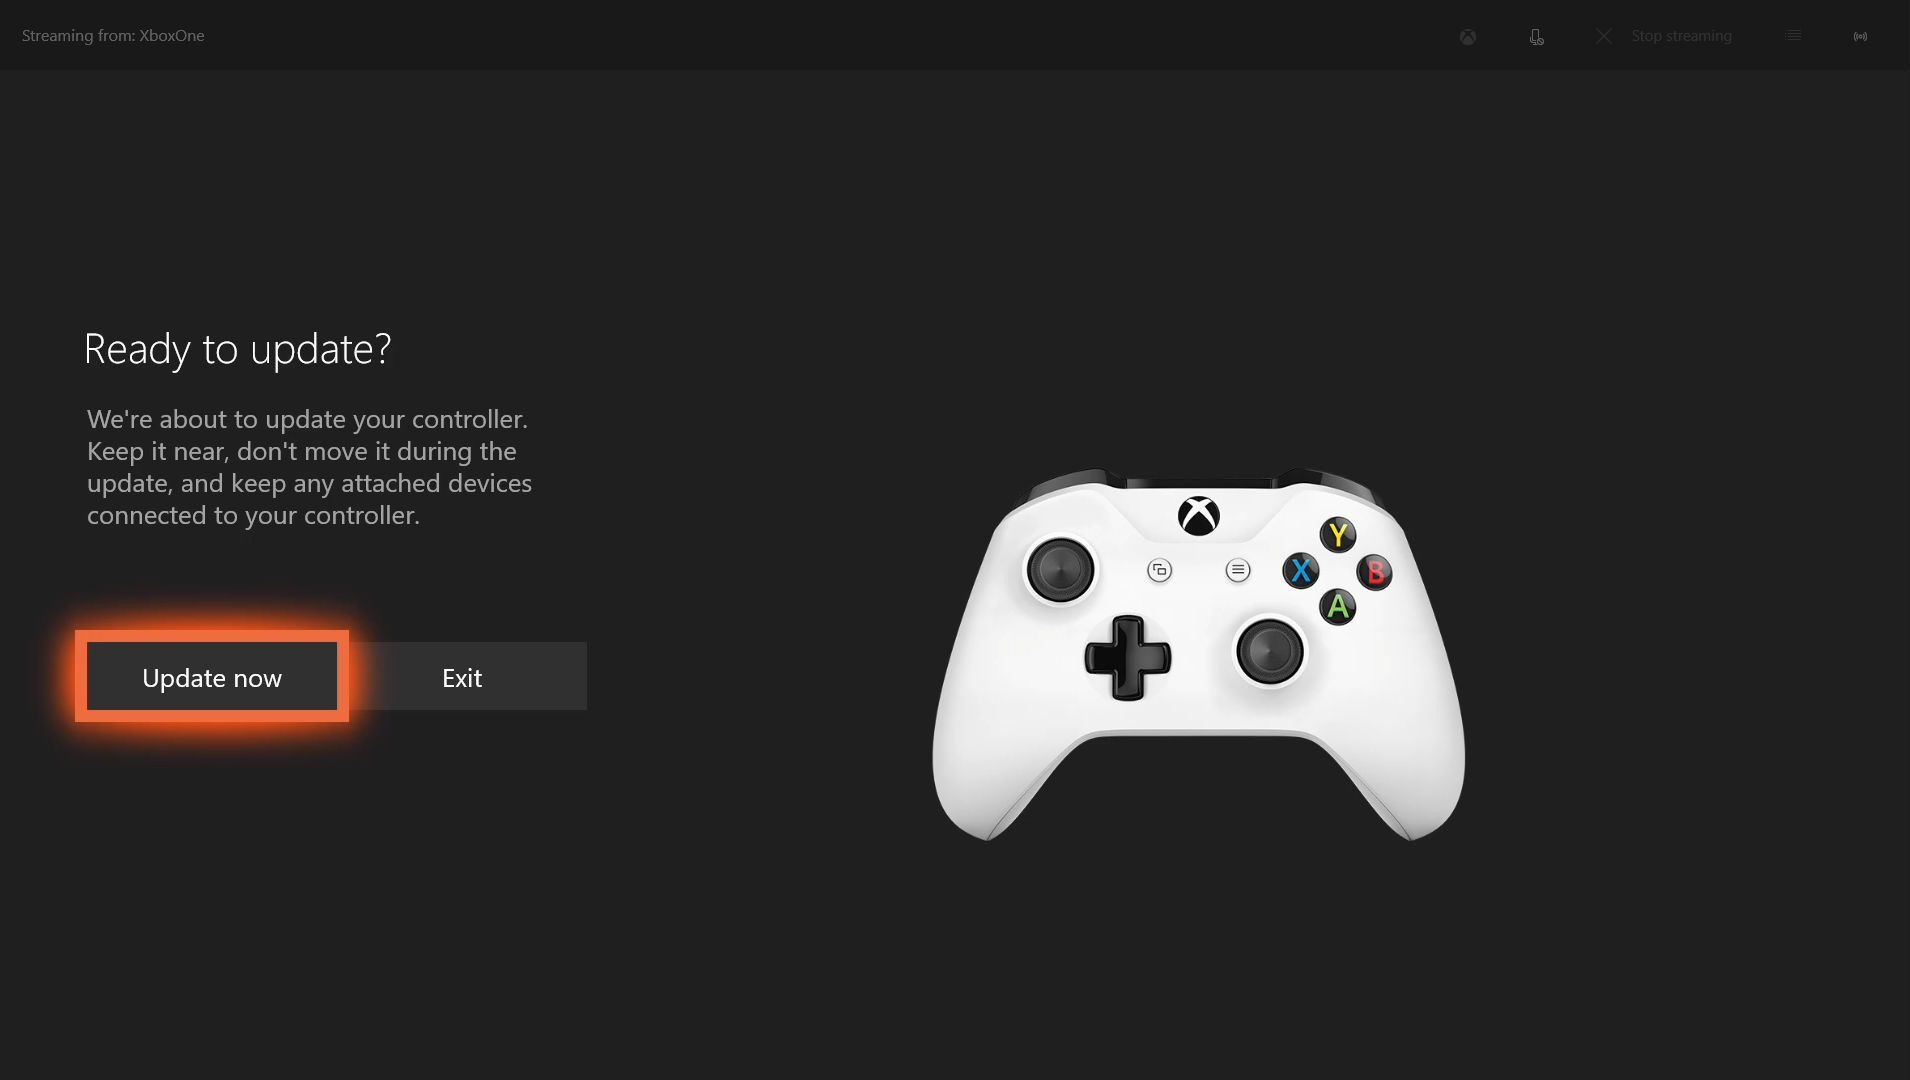 Скриншот экрана обновления контроллера Xbox one.